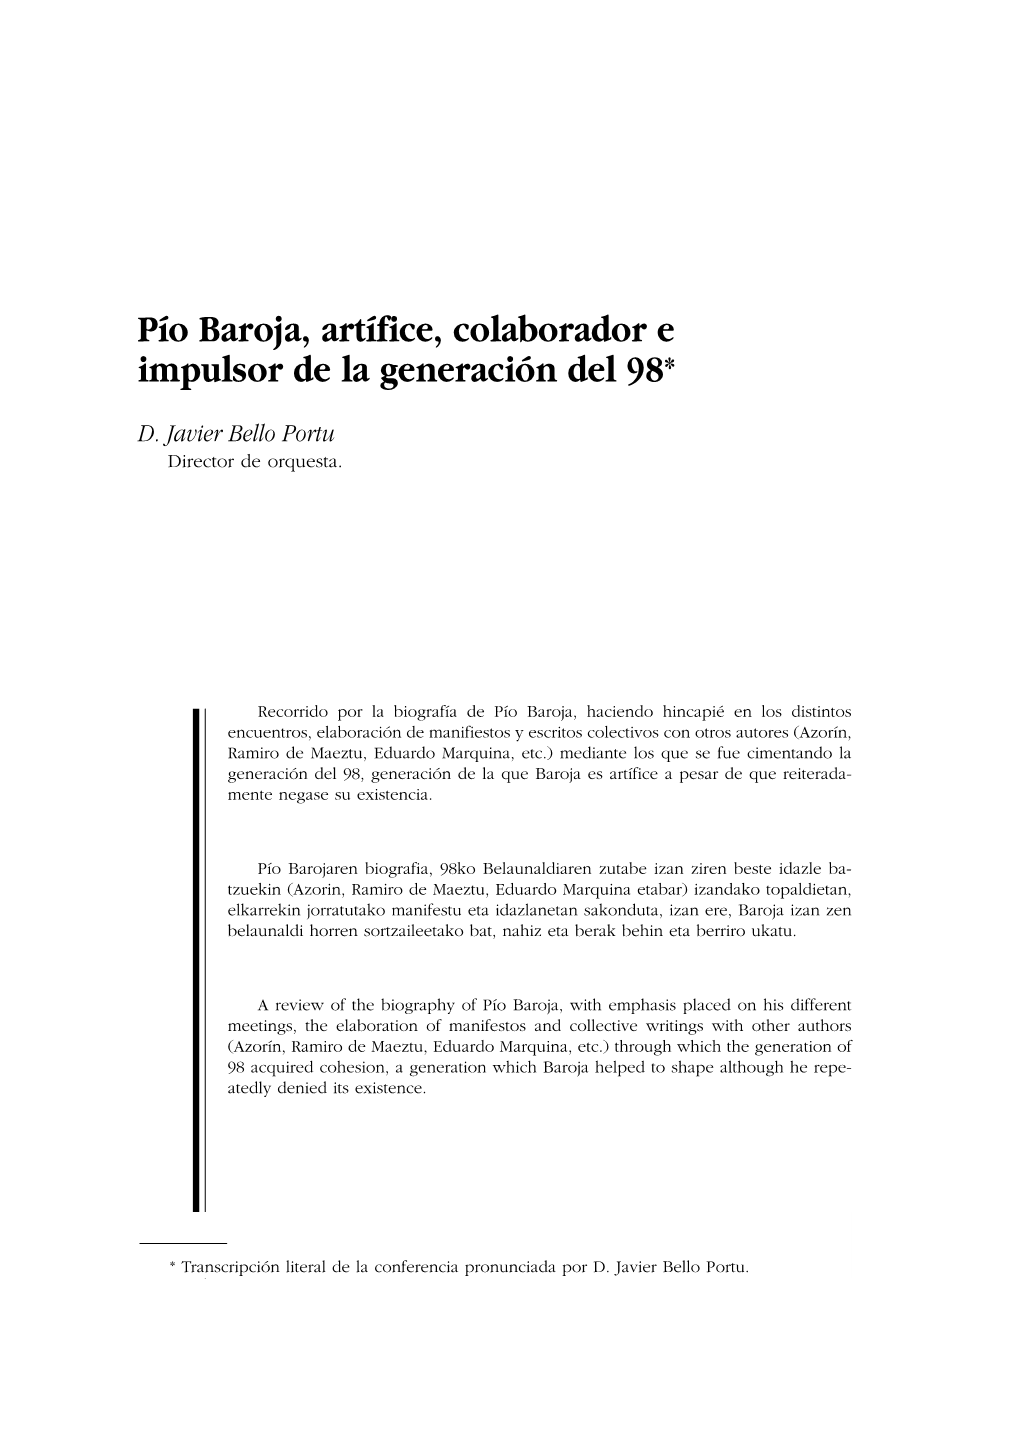 Pío Baroja, Artífice, Colaborador E Impulsor De La Generación Del 98*